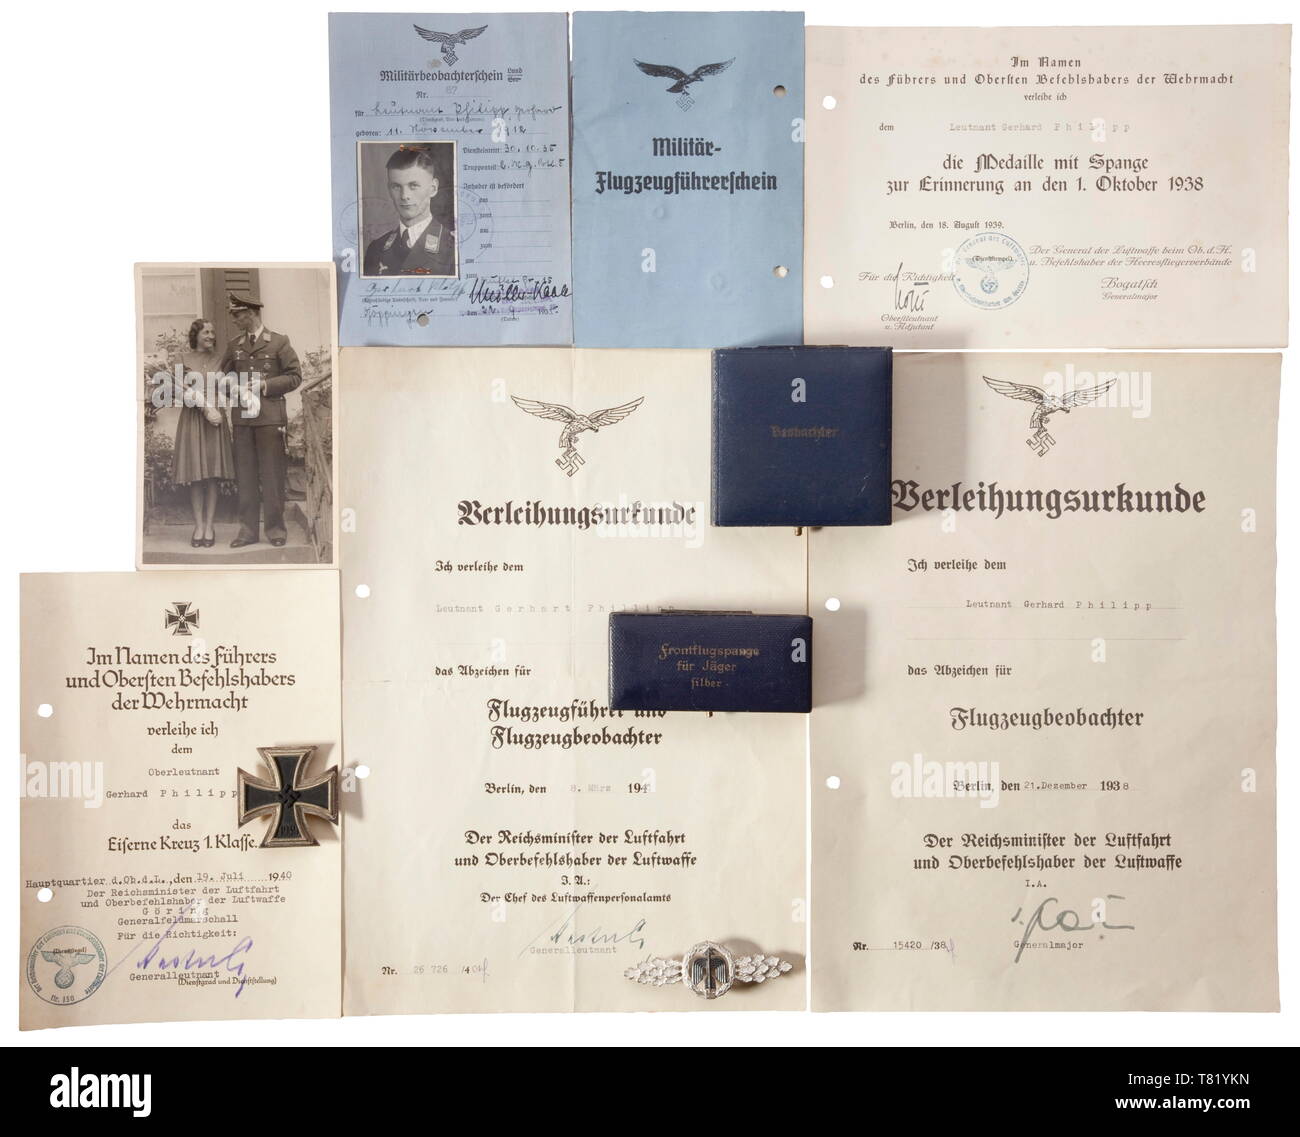 Gruppo capitano Gerhard Philipp - III./JG 26 'Schlageter'. Uno squadrone Fermatura per piloti di caccia in argento (swastika massa), incassato, una croce di ferro di prima classe del 1939 di maker 'L/12' con aggiudicazione documento datato 19 luglio 1940, documento per l'osservatore dell'antenna del badge 1938 con blu caso di aggiudicazione per la decorazione, documento di aggiudicazione per il pilota combinato/osservatore del badge 1940, documento per la medaglia commemorativa del 1 ottobre 1938 (Sudeti) e un appuntamento al tenente. Anche una lettera di esonero per il suo amico capitano pip Priller per quanto riguarda le presunte riprese del pilota inglese, Editorial-Use-solo Foto Stock